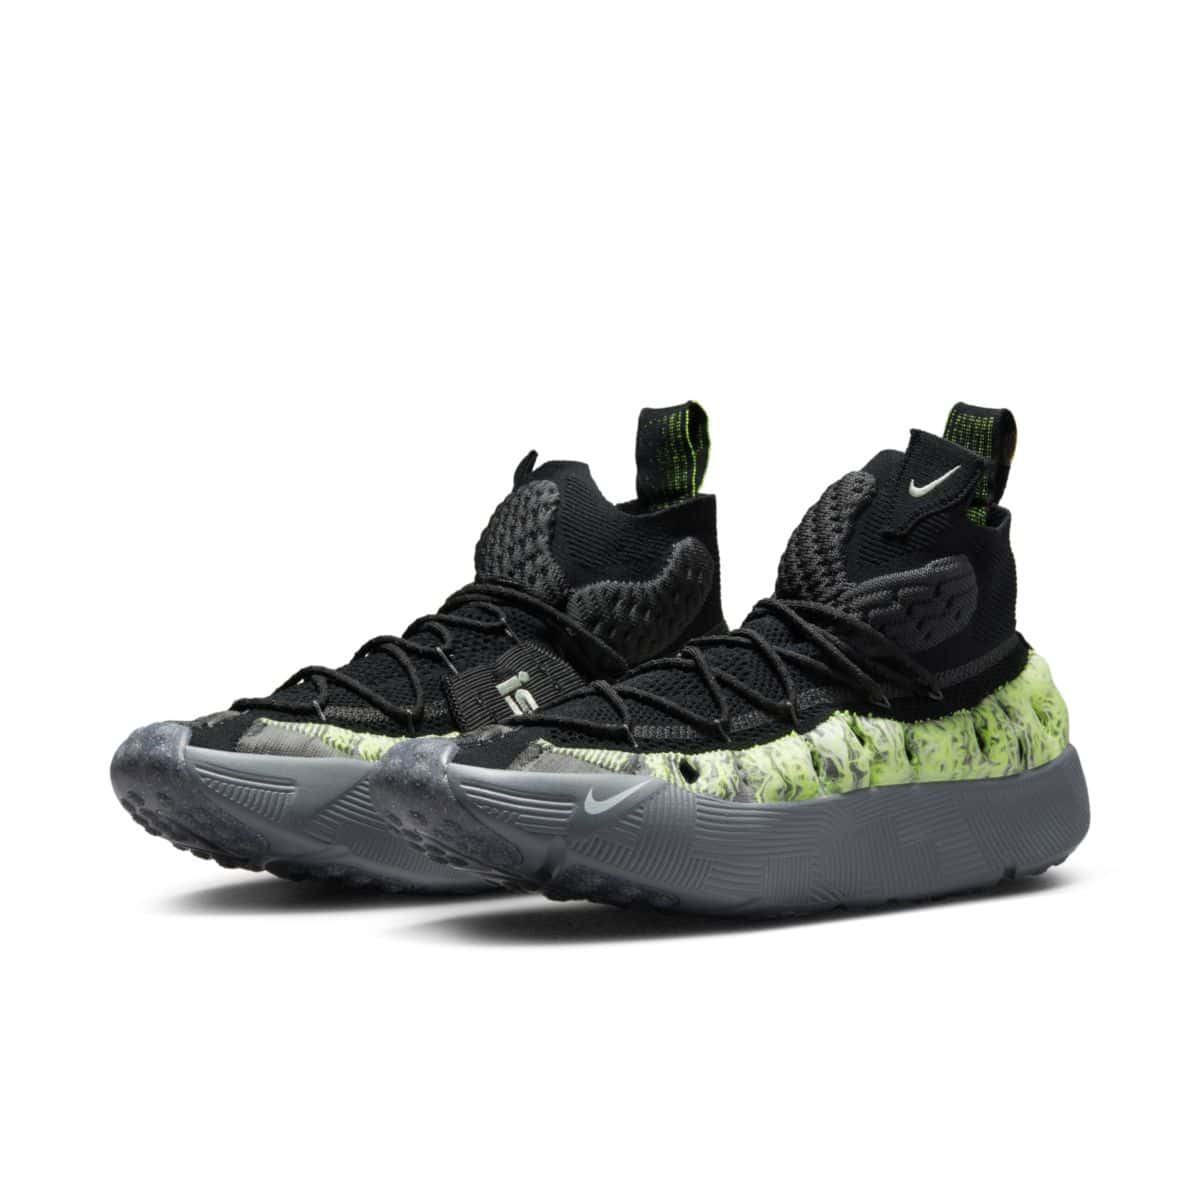 Nike ISPA Sense Flyknit Black Neon Green CW3203-003 4